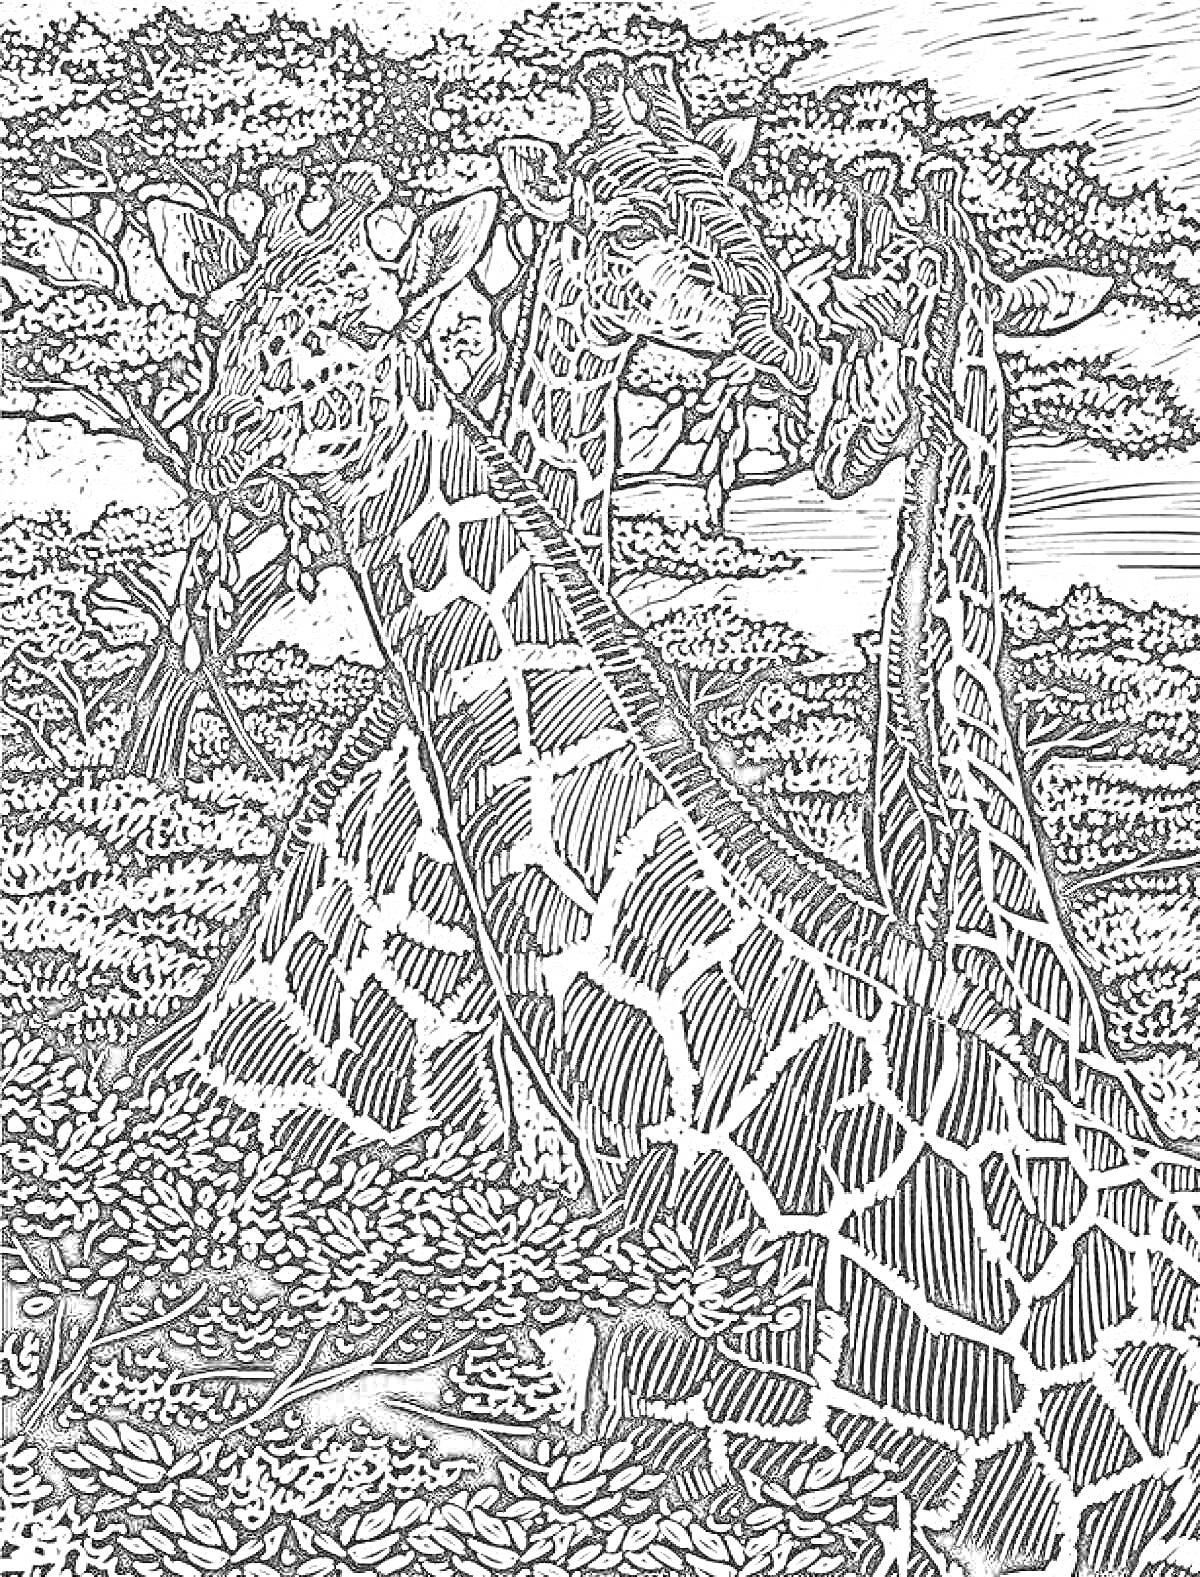 На раскраске изображено: Жирафы, Деревья, Кусты, Африканский пейзаж, Графика, Природа, Дикие животные